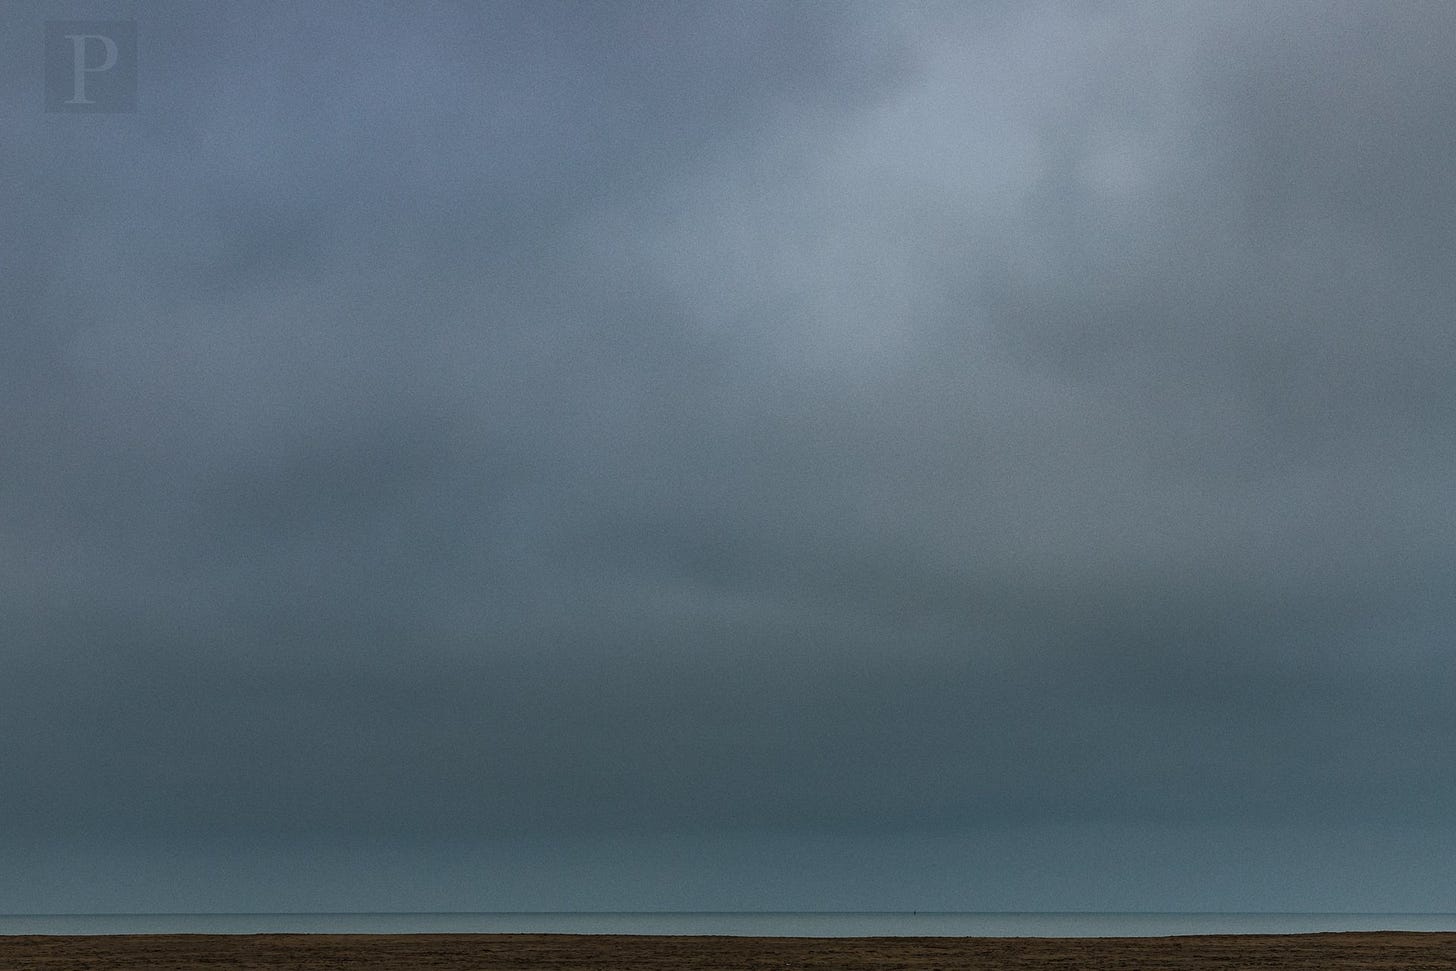 Hier werd de horizon extreem laag geplaatst in het frame. Omdat de lucht het grootste deel van het beeld inneemt, krijg je een indruk van immense grootsheid, en hier ook van leegte. Het is alsof de lucht zwaar weegt op het landschap. © Geert Huysman